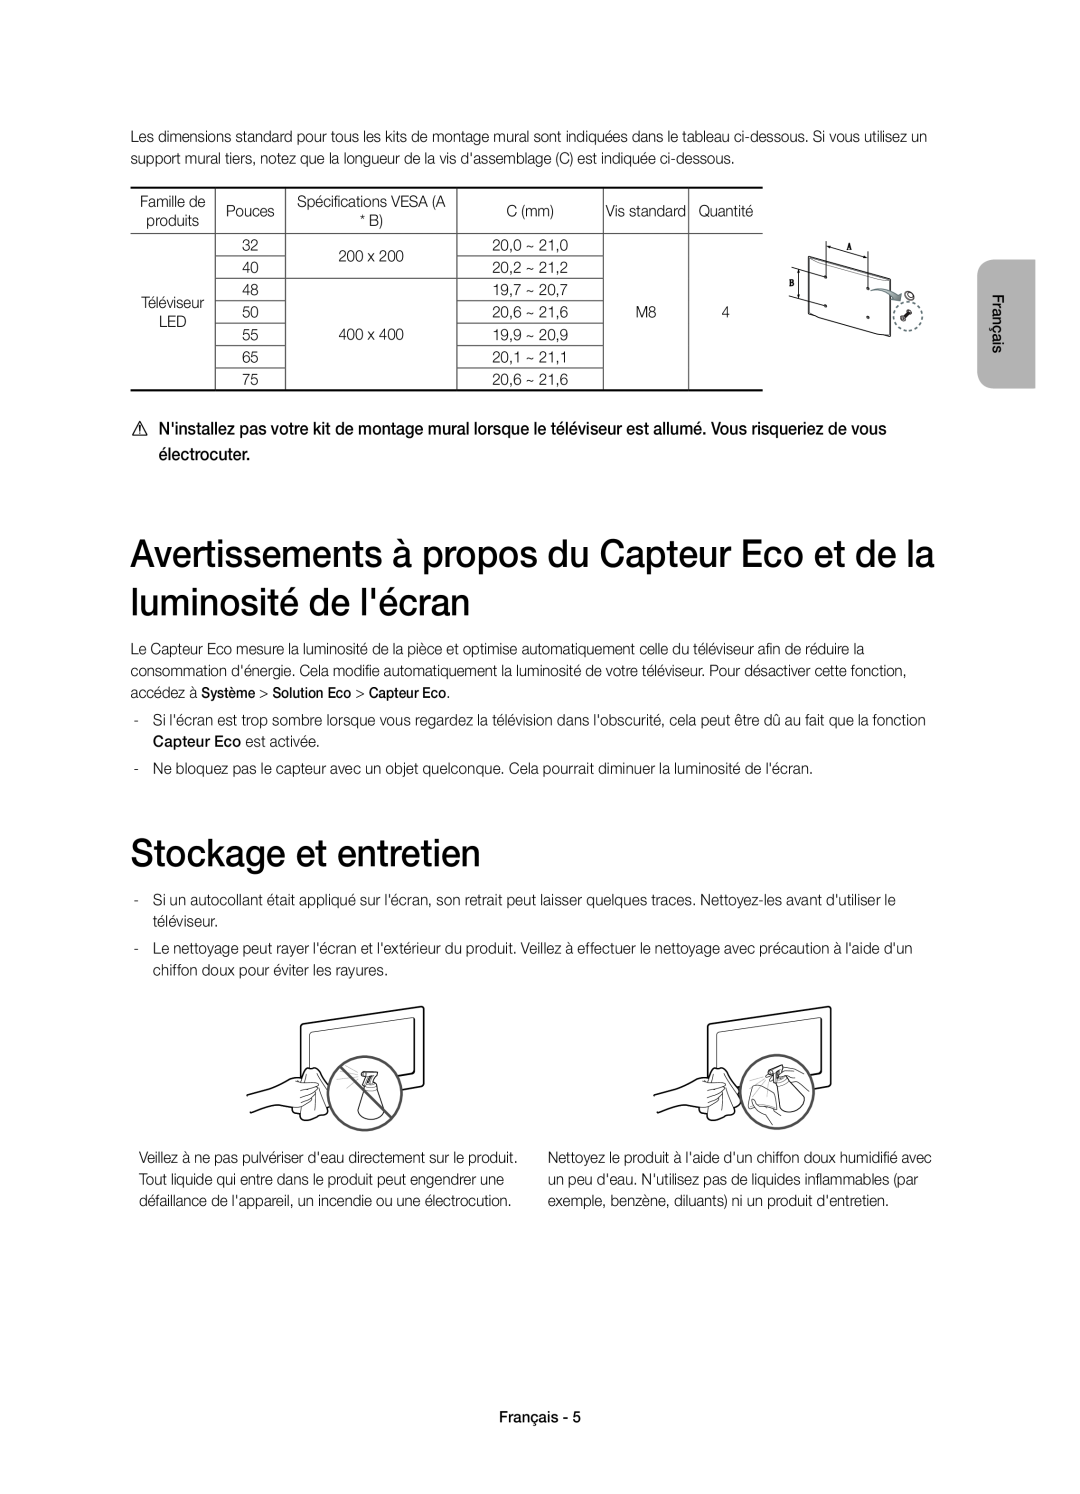 Samsung UE75H6400AWXXC manual Avertissements à propos du Capteur Eco et de la luminosité de lécran, Stockage et entretien 